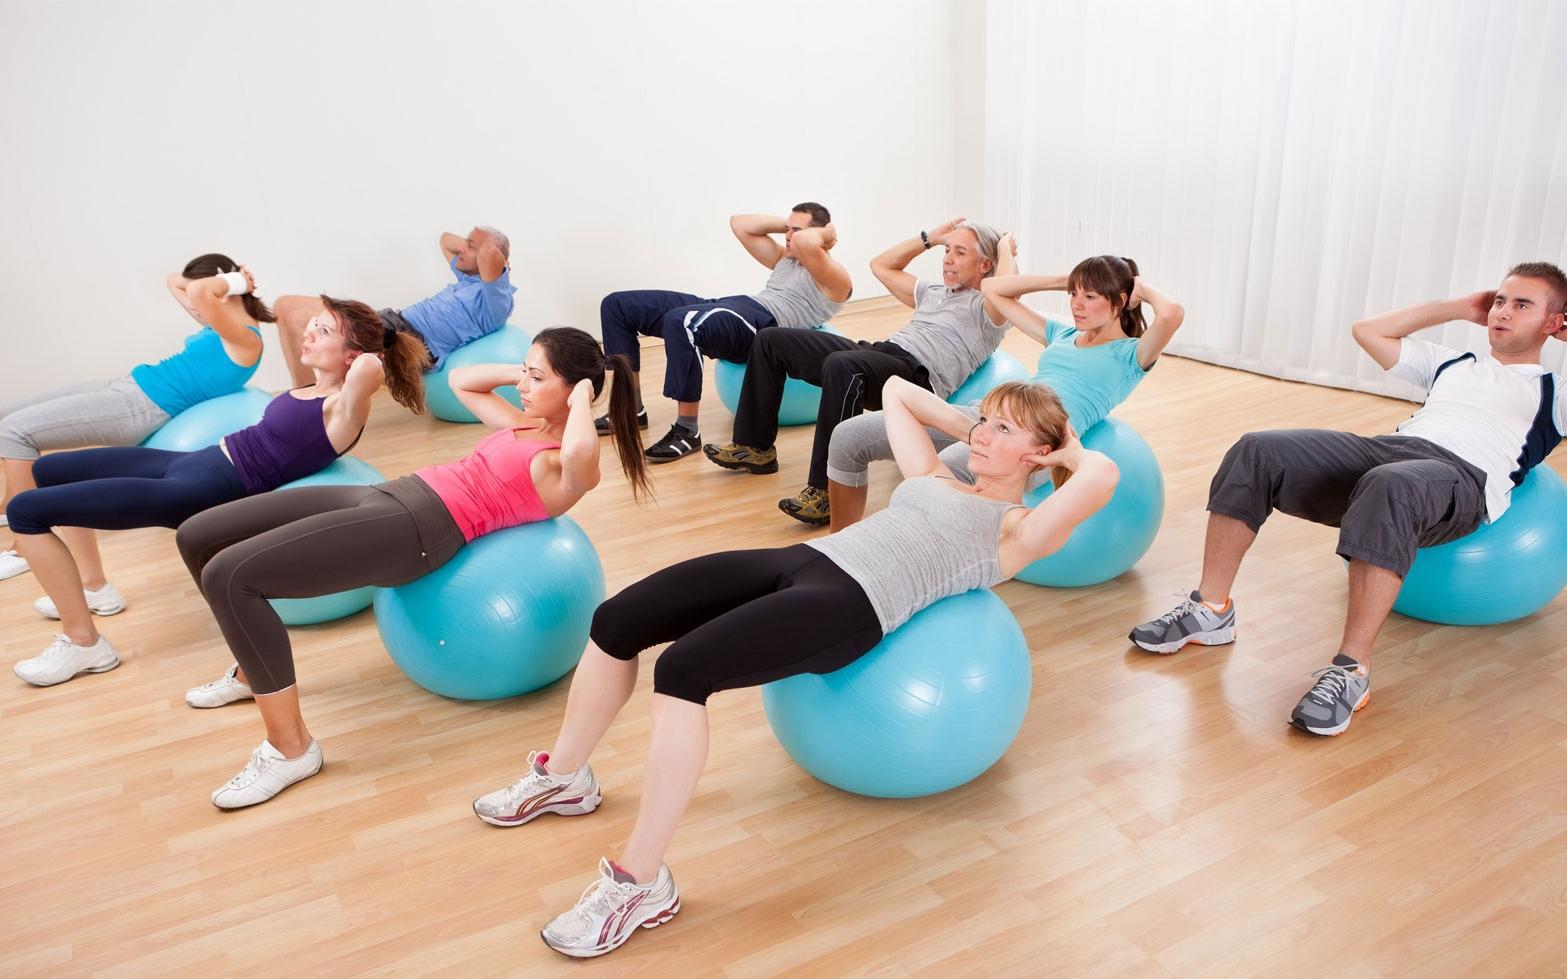 Pilates class in a wellness centre